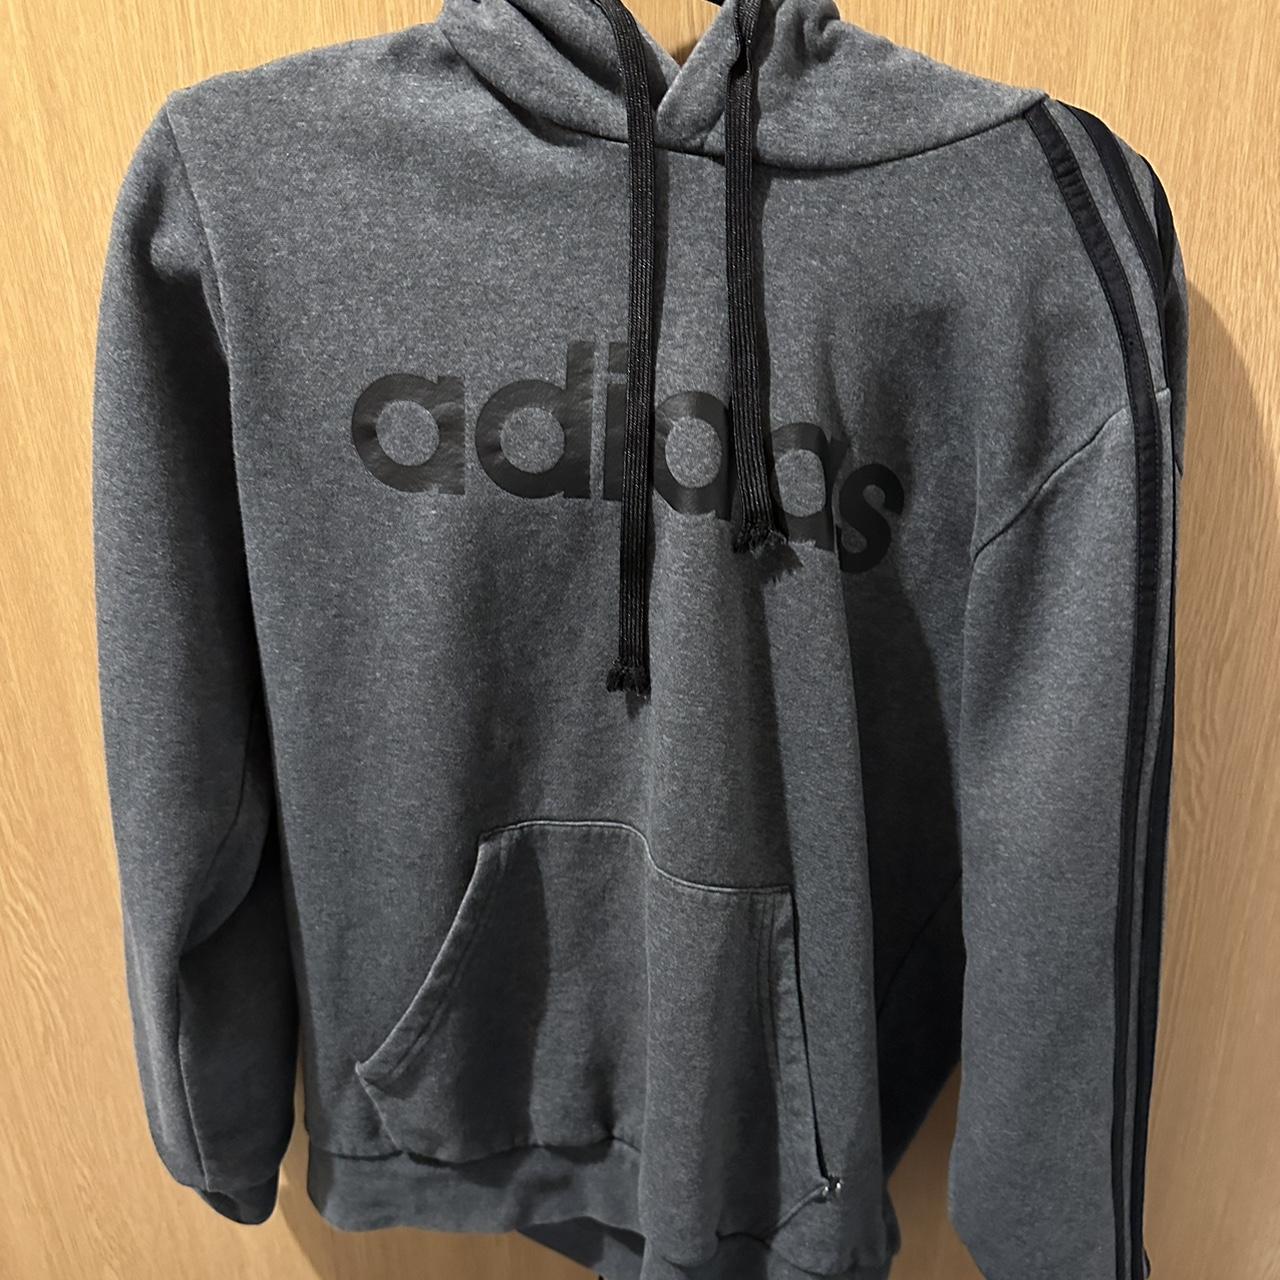 Adidas hoodie Black and grey Size M good... - Depop